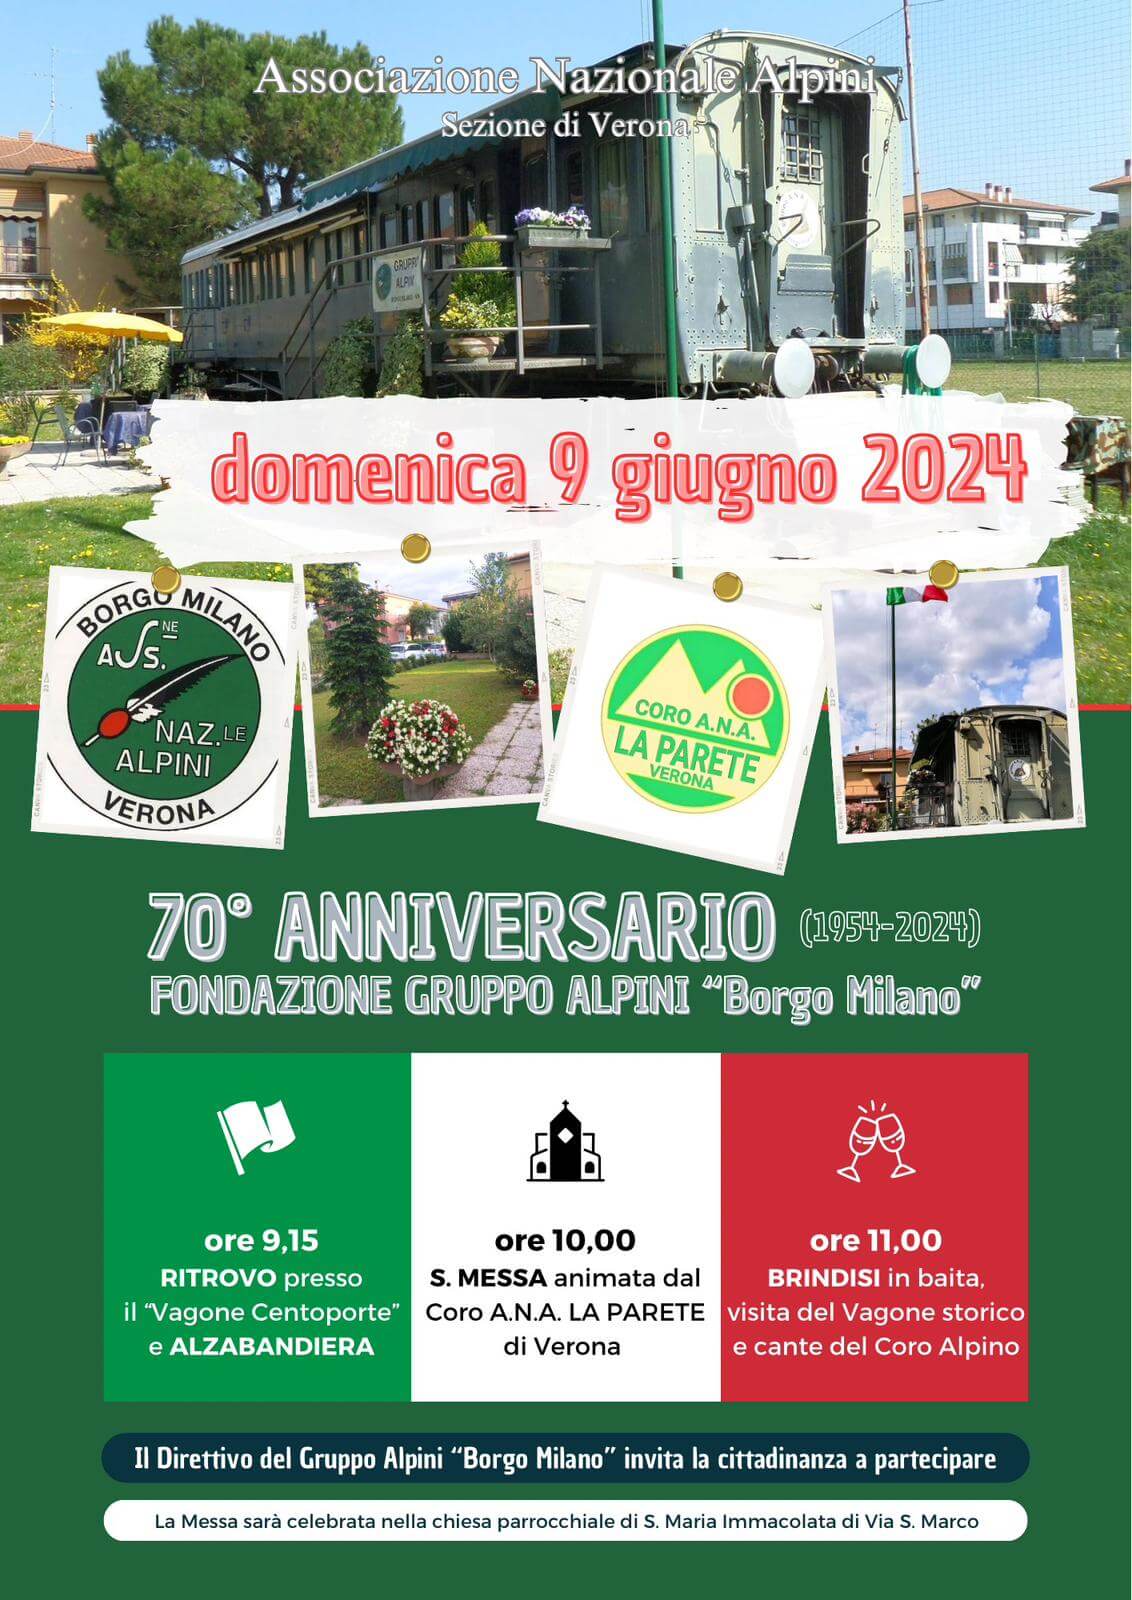 9/6: 70mo anniversario Alpini B.go Milano